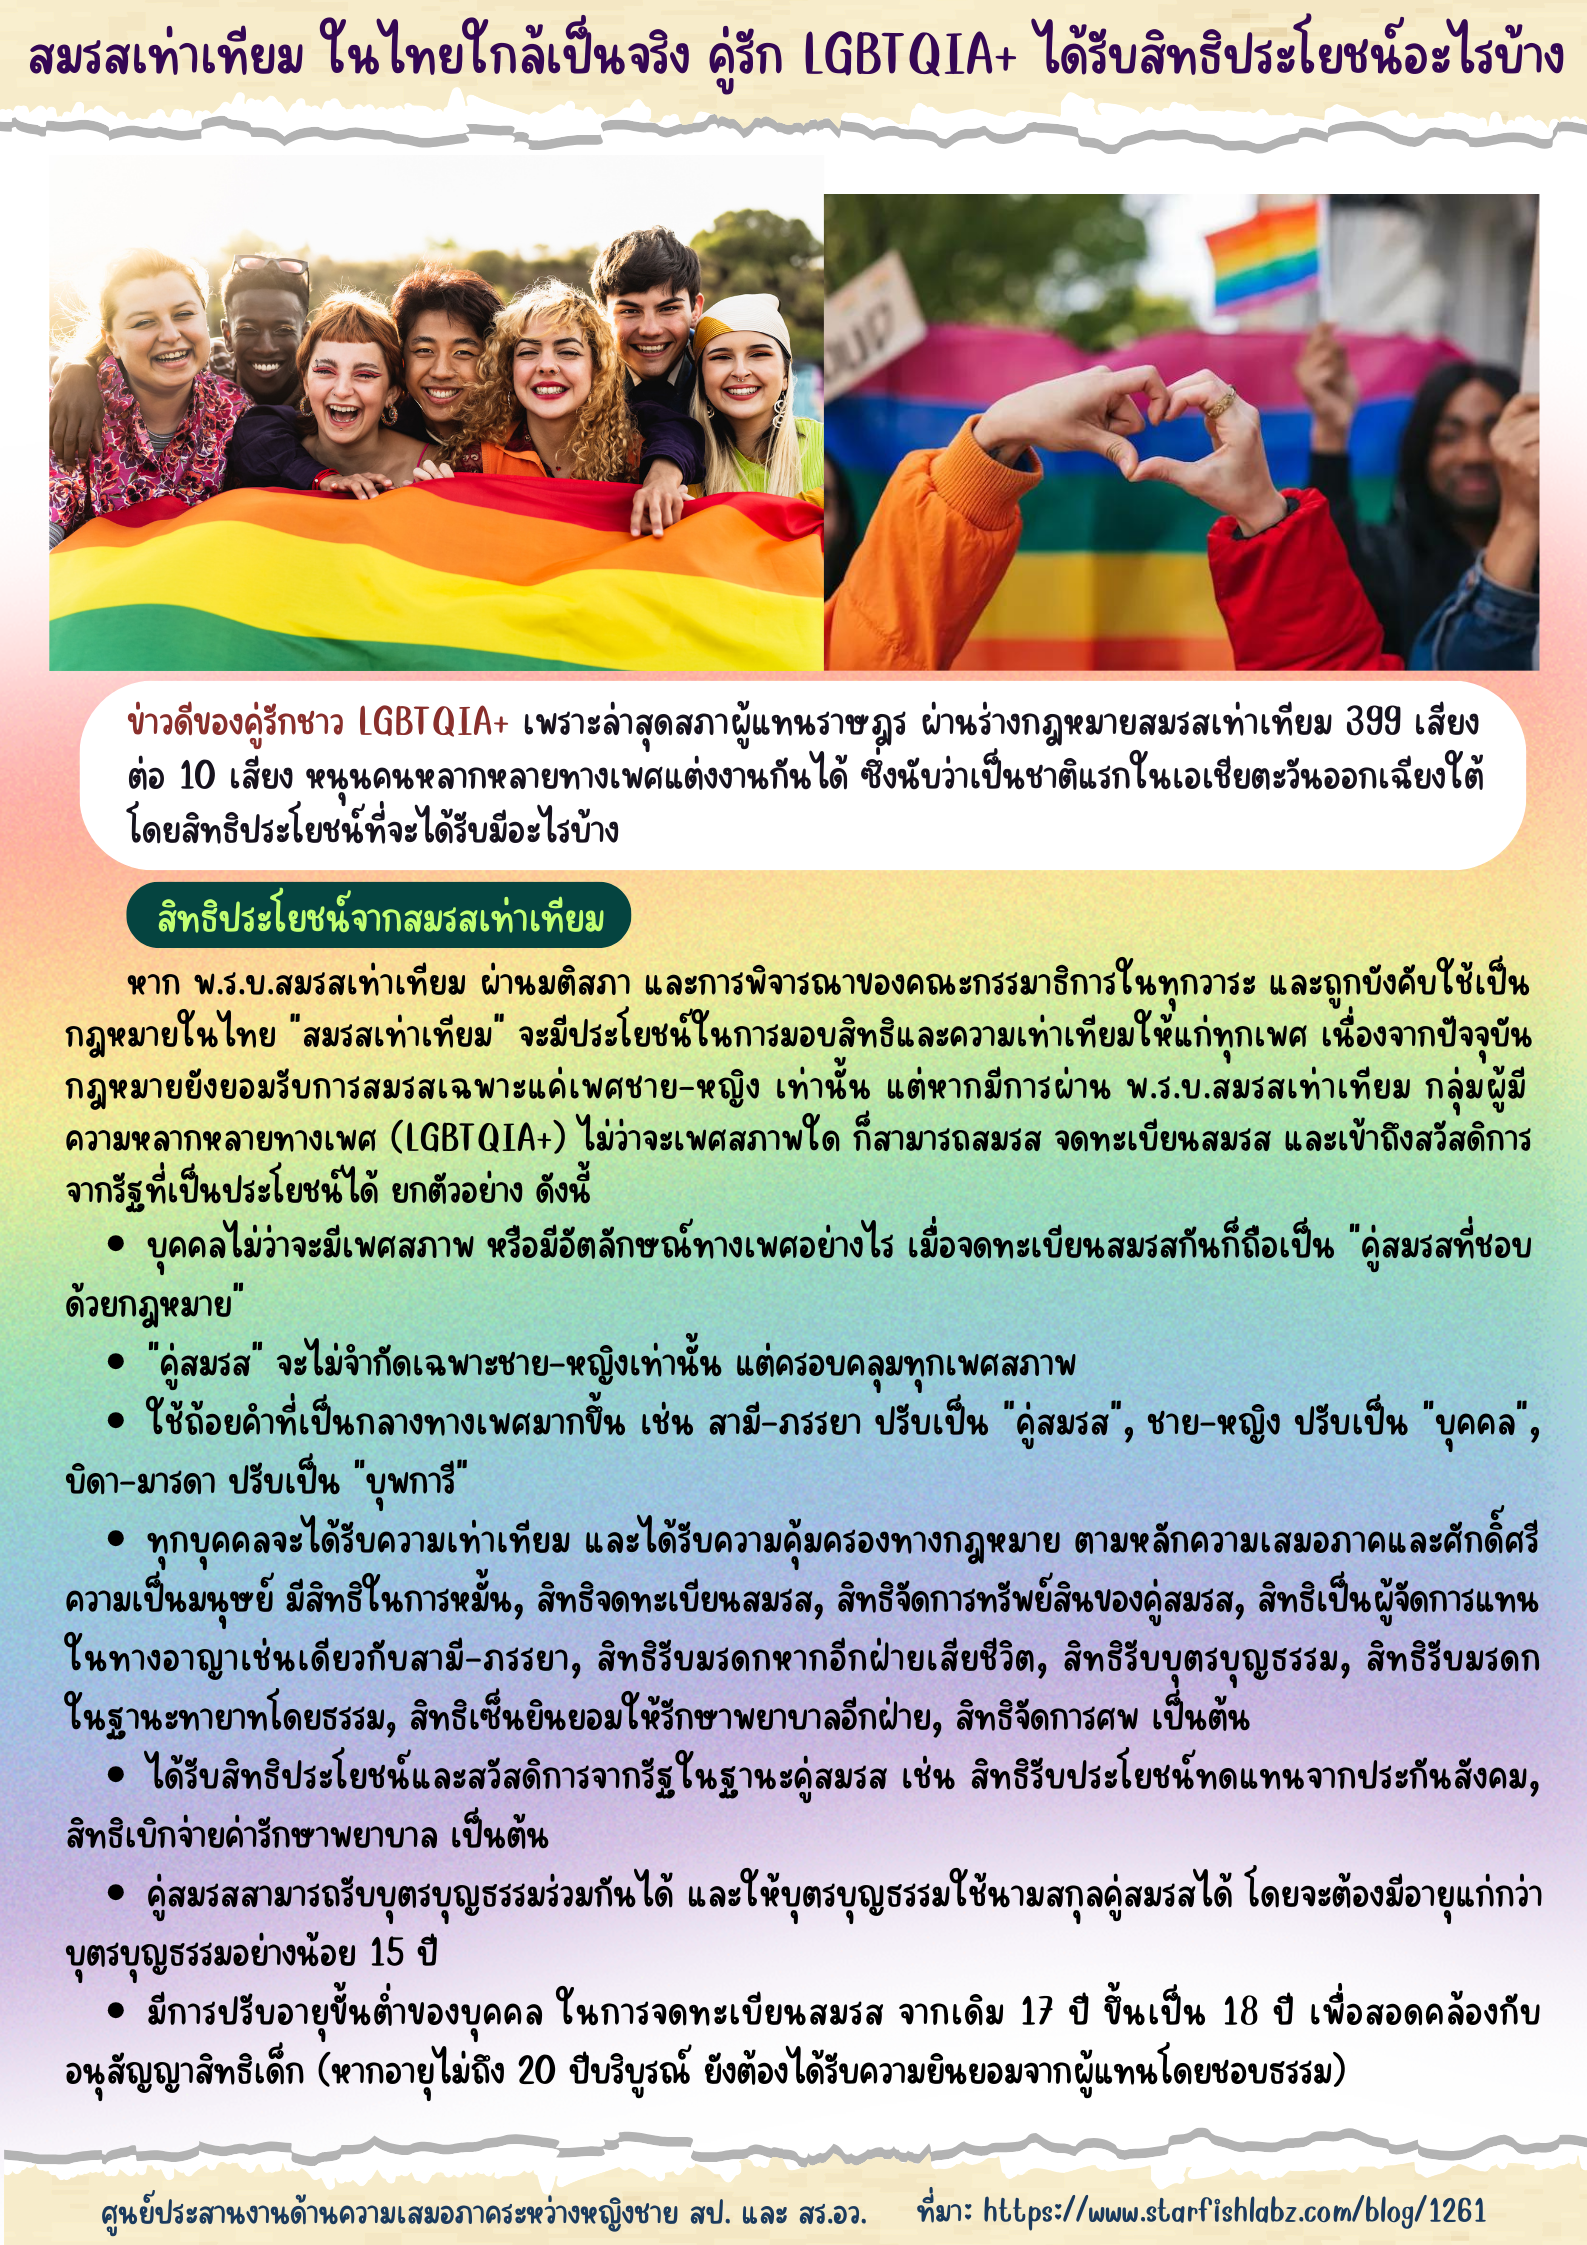 1 สมรสเท่าเทียม ในไทยใกล้เป็นจริง คู่รัก LGBTQIA ได้รับสิทธิประโยชน์อะไรบ้าง